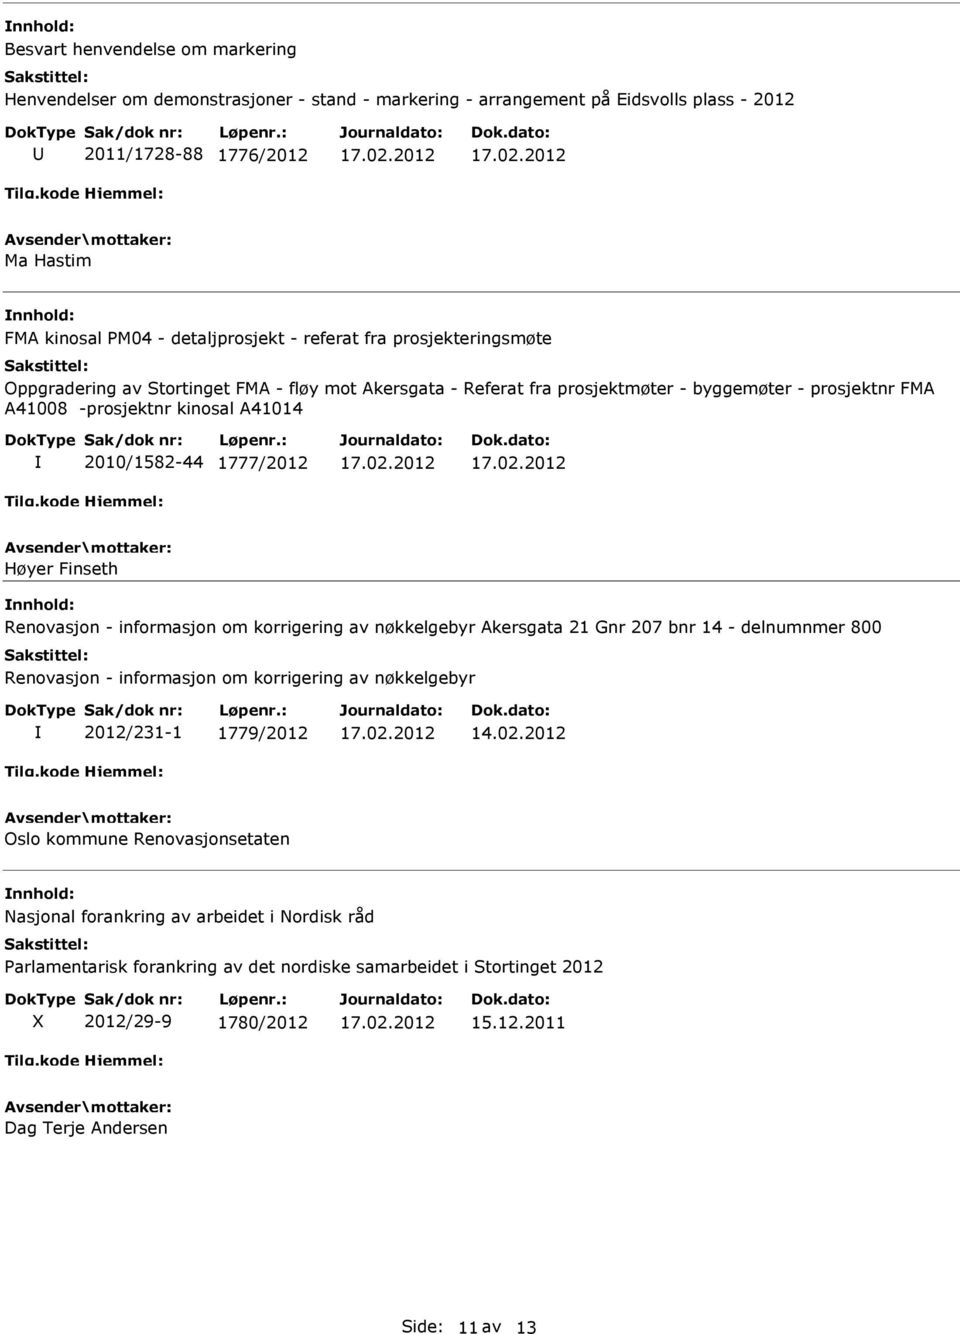 Høyer Finseth Renovasjon - informasjon om korrigering av nøkkelgebyr Akersgata 21 Gnr 207 bnr 14 - delnumnmer 800 Renovasjon - informasjon om korrigering av nøkkelgebyr 2012/231-1 1779/2012 14.02.